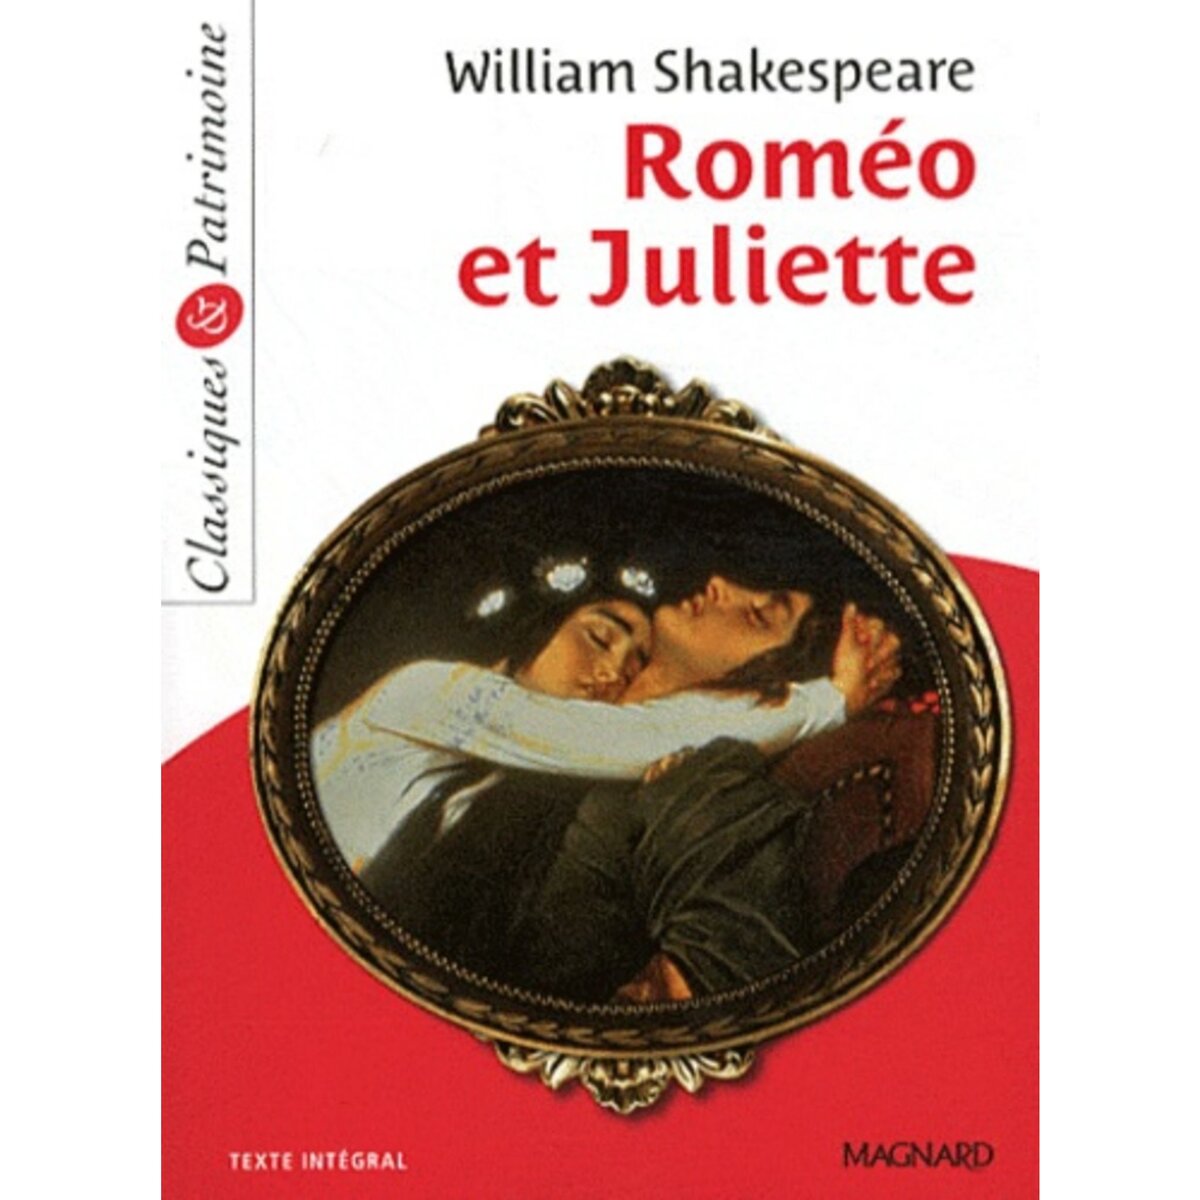  ROMEO ET JULIETTE, Shakespeare William